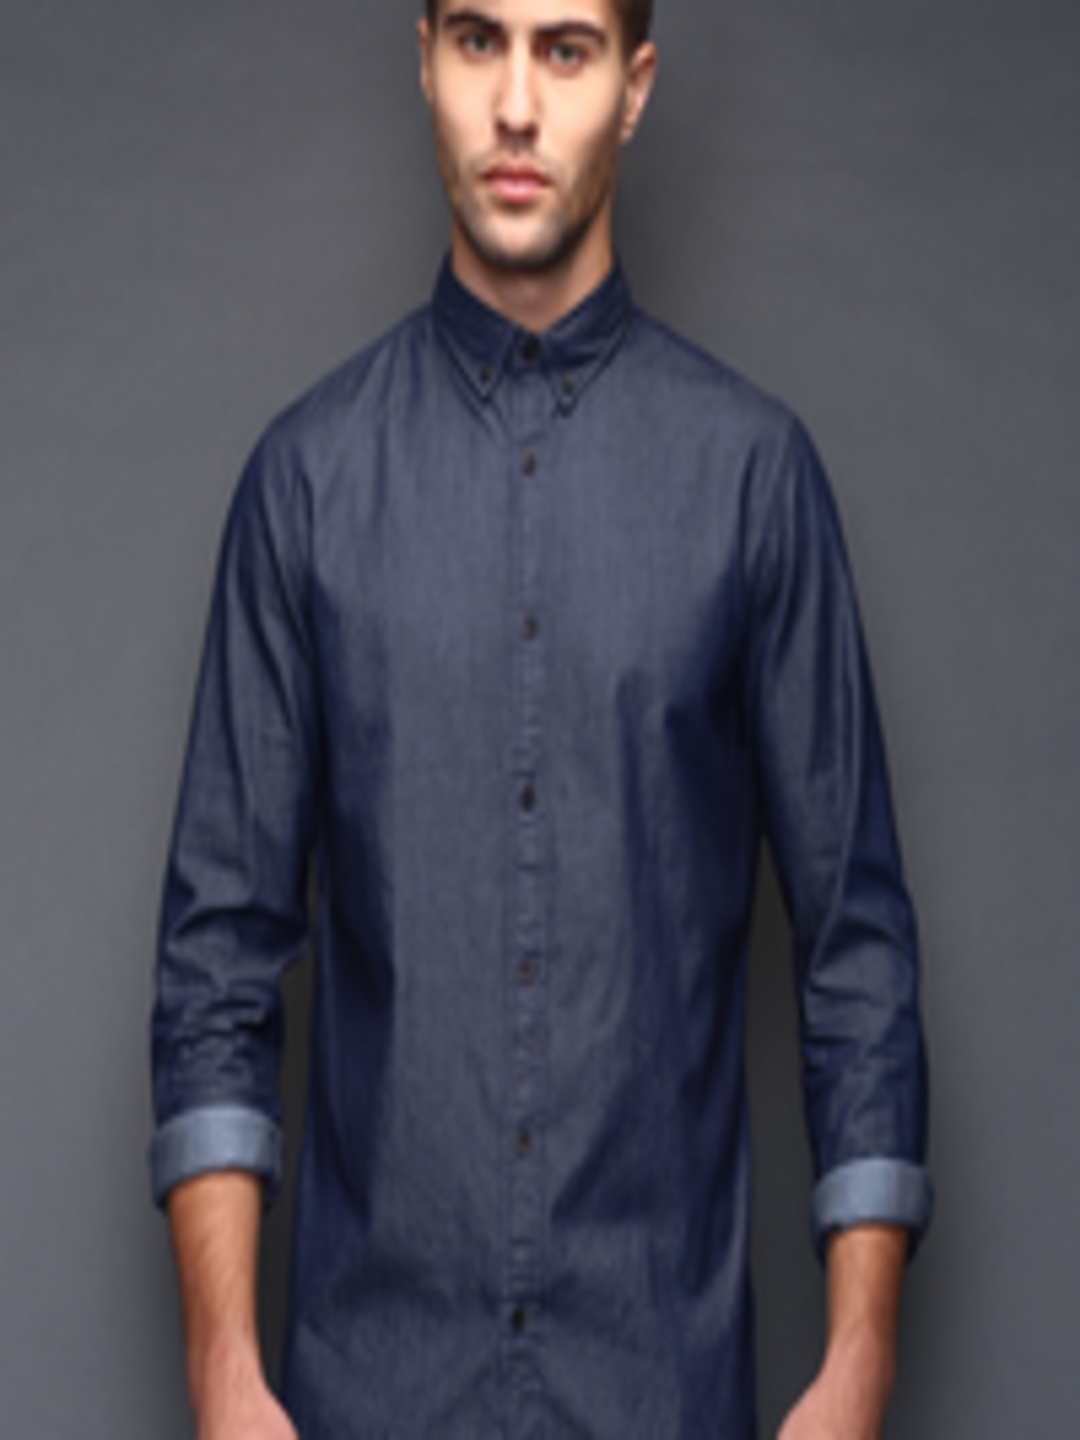 Buy SELECTED Blue Denim Slim Fit Casual Shirt - Shirts for Men 1208099 ...